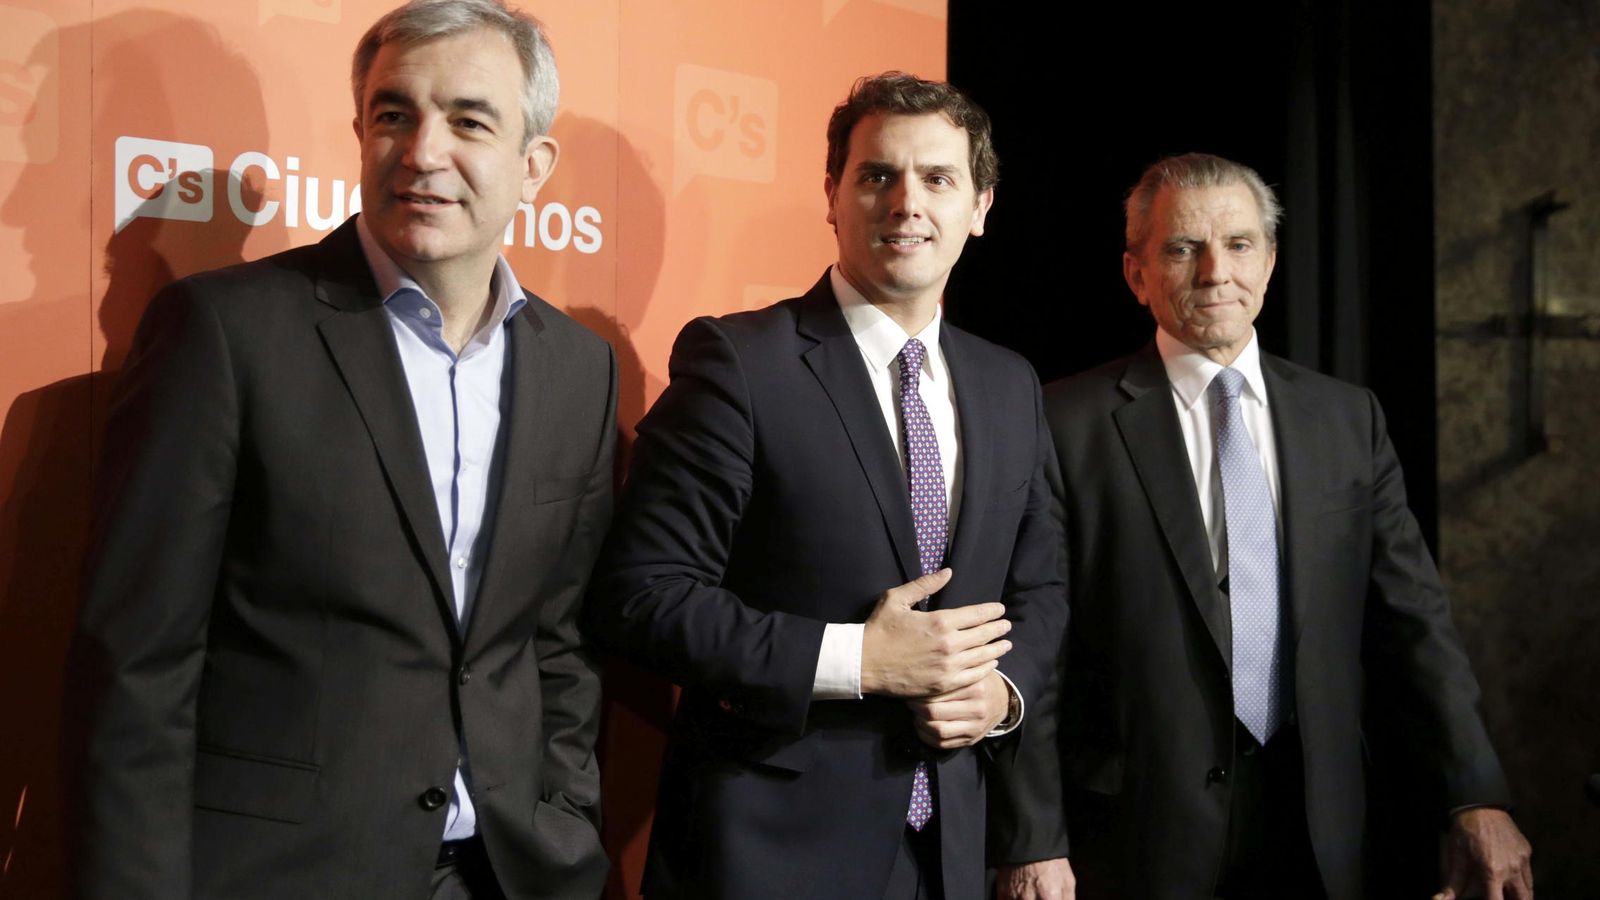 Foto:  El presidente de Ciudadanos, Albert Rivera, junto a los economistas Luis Garicano y Manuel Conthe. (EFE/Zipi)